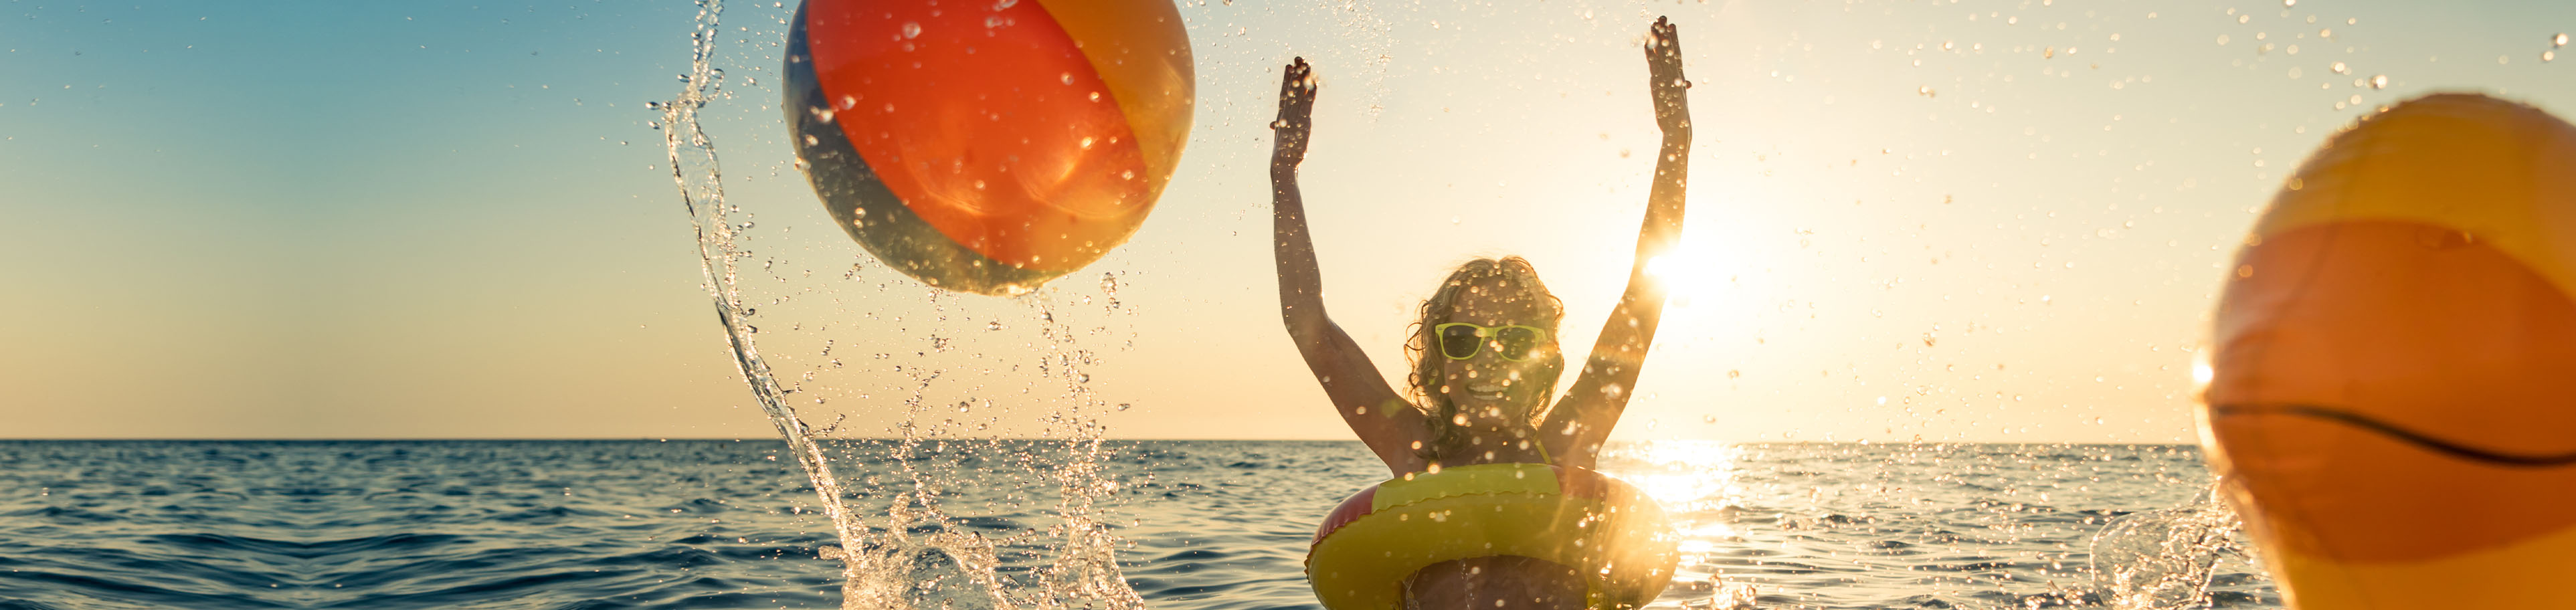 Kind planscht mit Schwimmreifen im Meer und wirft einen Wasserball hoch. Im Hintergrund ist ein Sonnenuntergang zu sehen. 